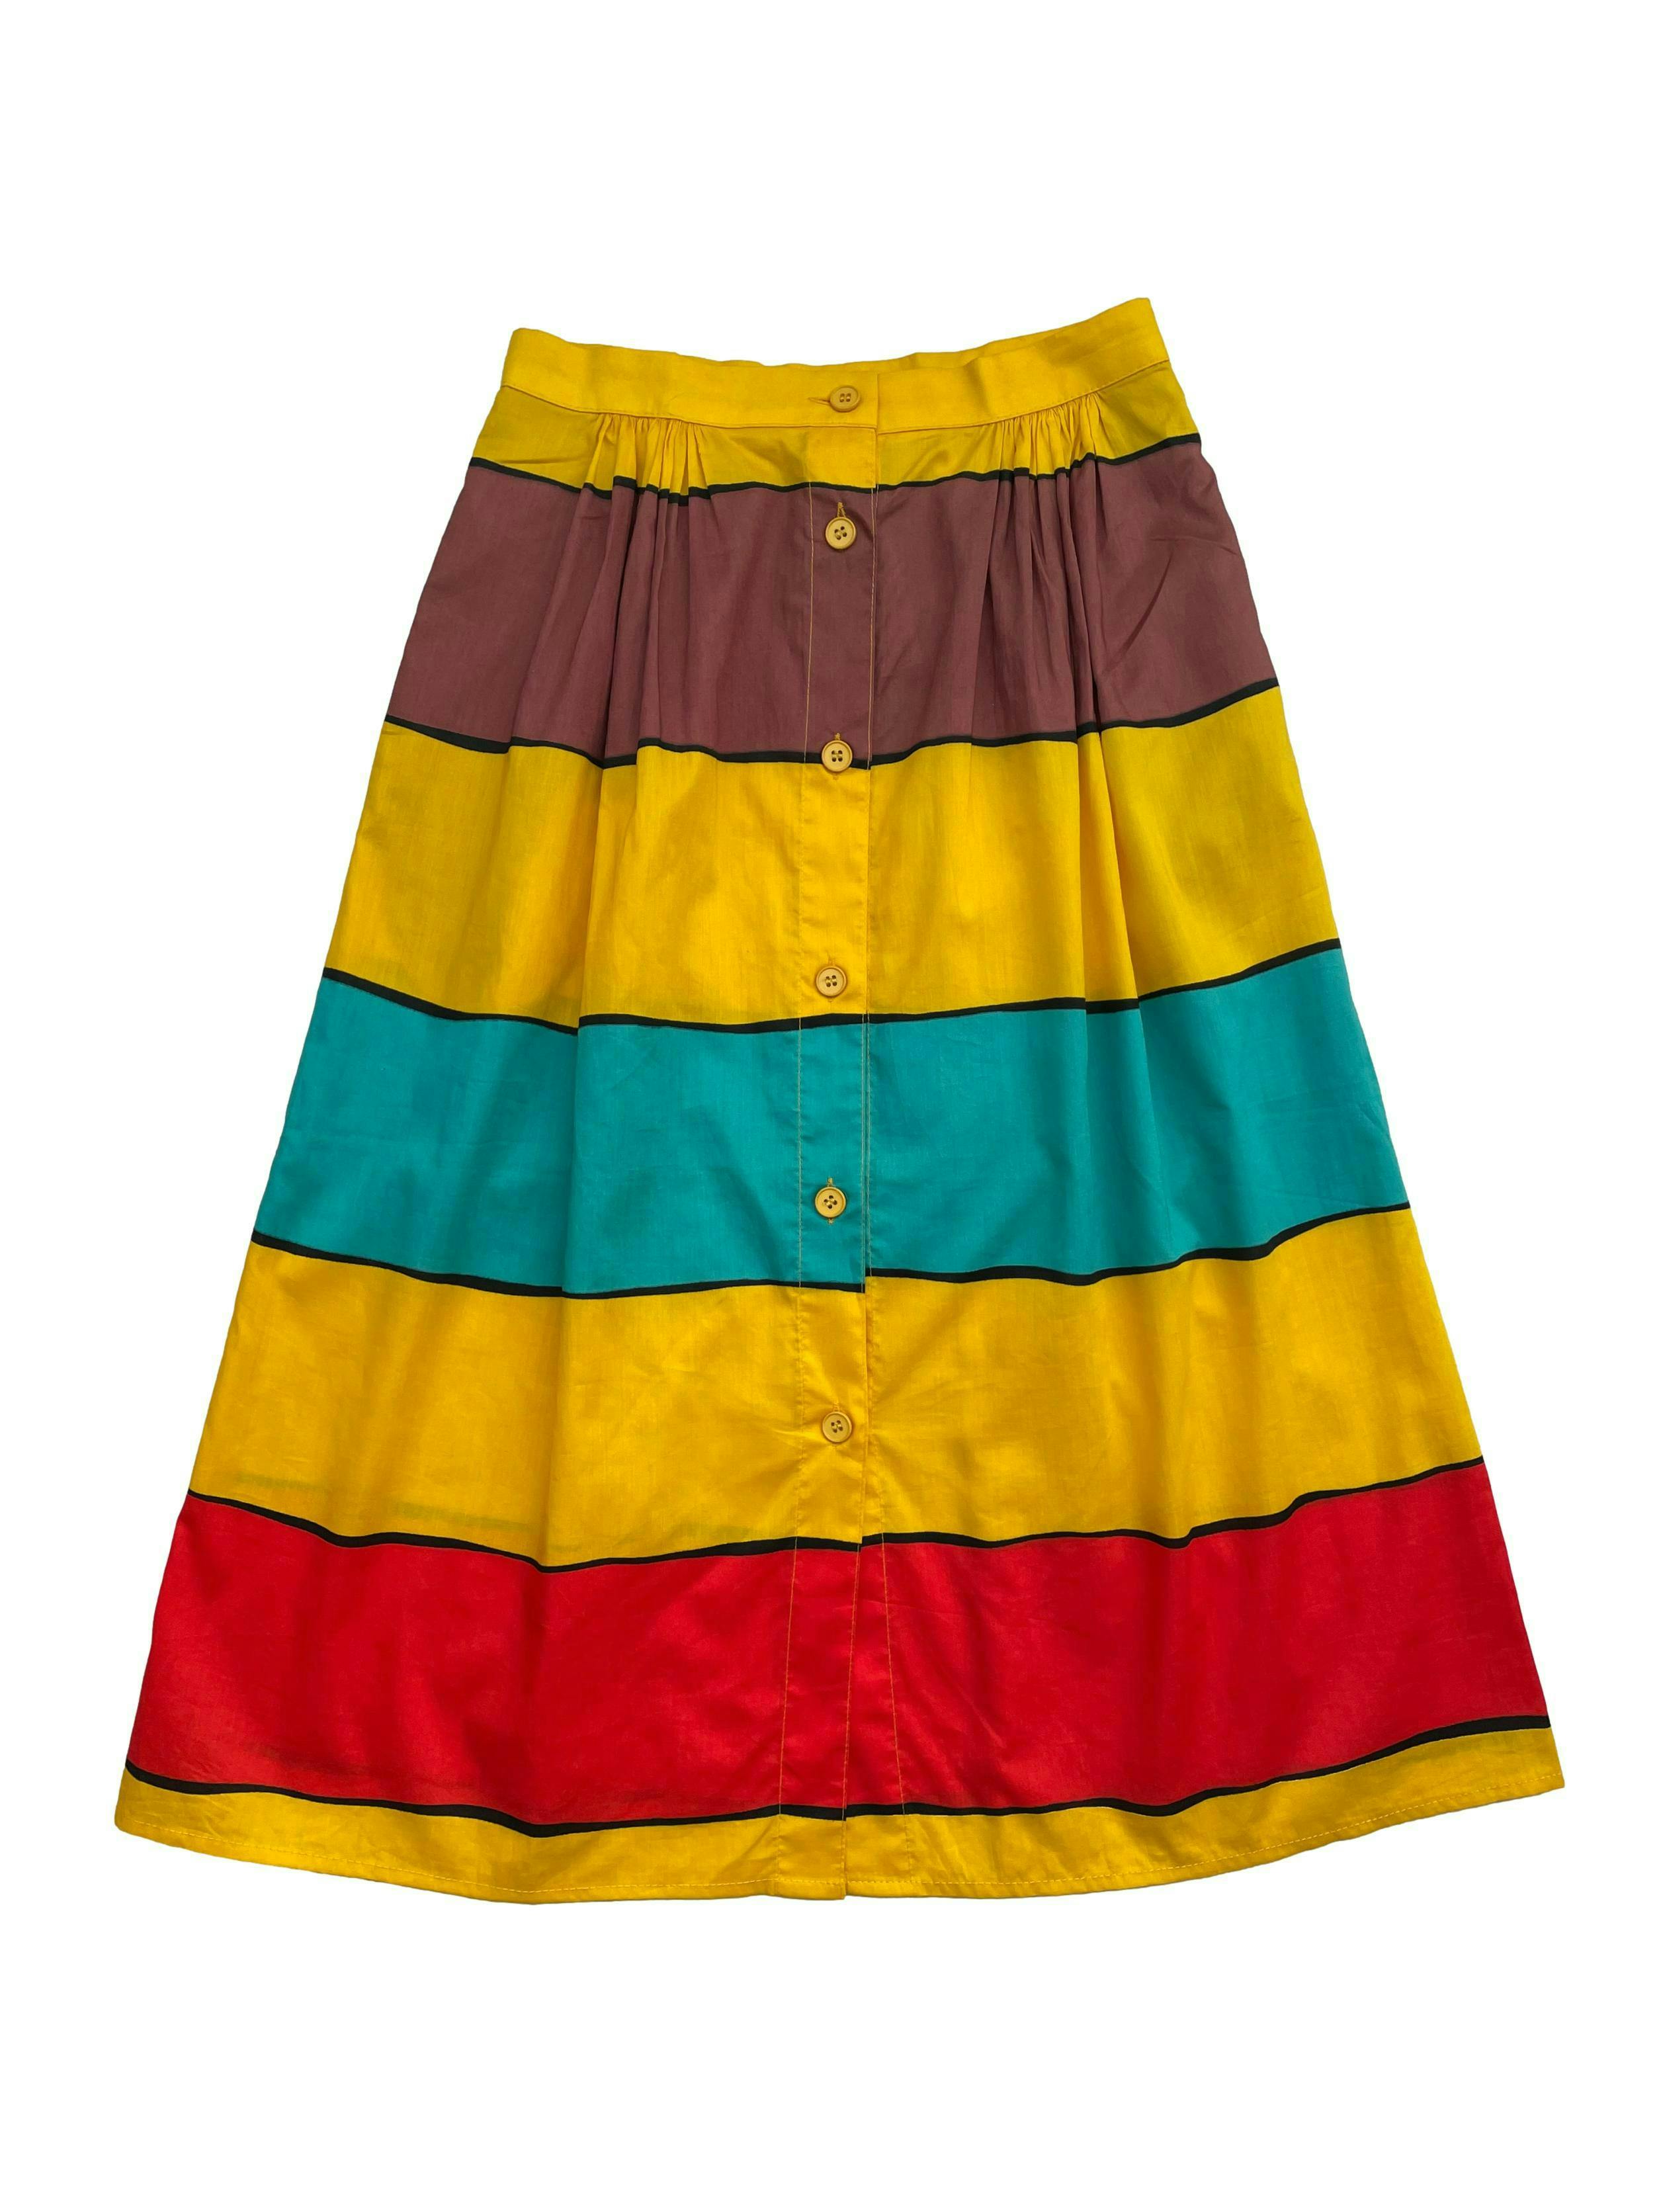 Falda vintage con franjas en amarillo, celeste y rojo, tela 100% algodón, con botones frontales. Cintura 60cm , Largo 68cm.